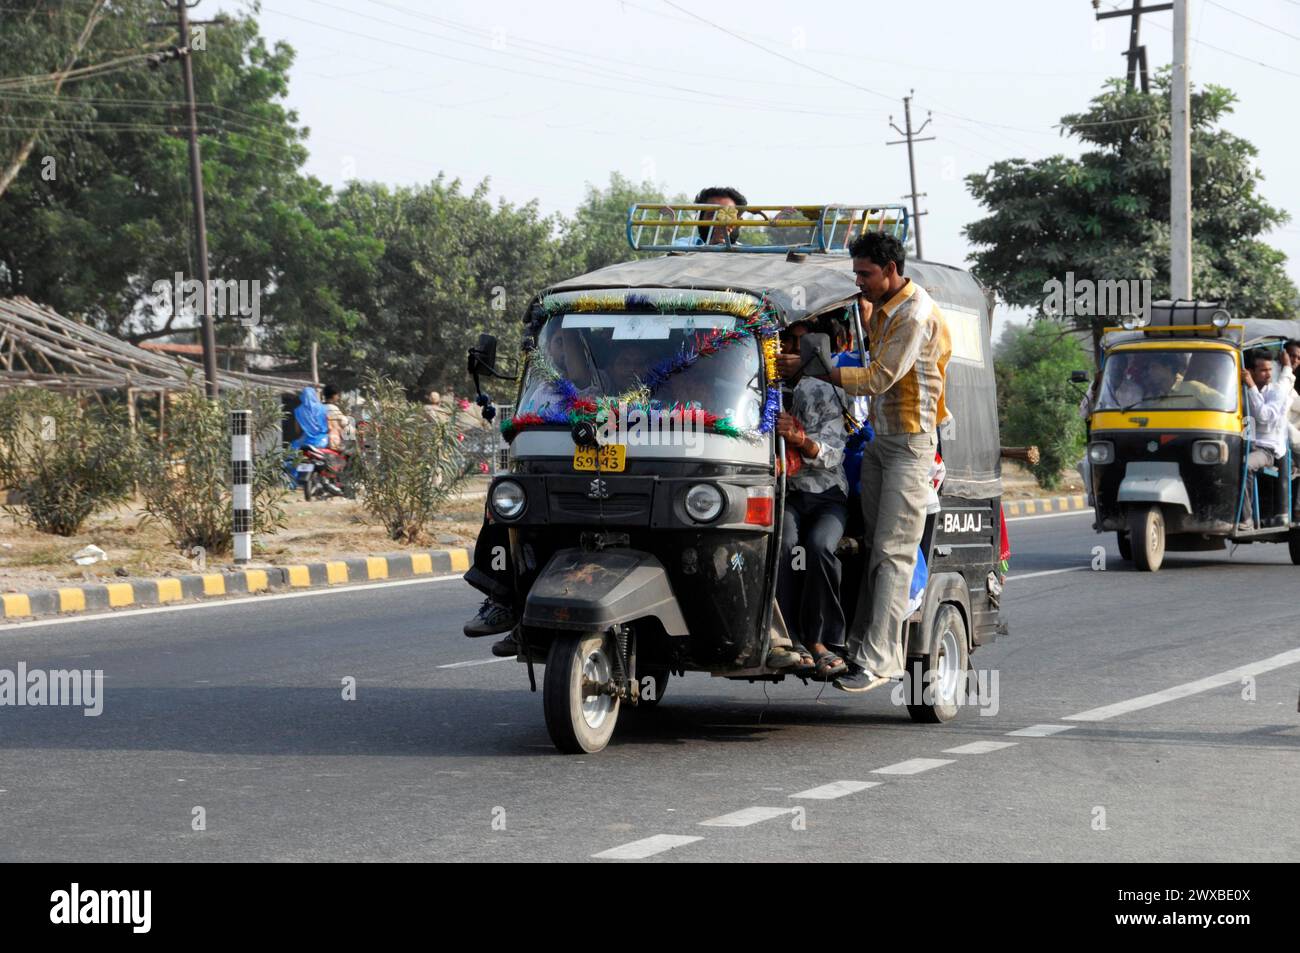 Un tuk-tuk avec des passagers dans une rue animée comme moyen de transport quotidien, Rajasthan, Inde du Nord, Inde Banque D'Images